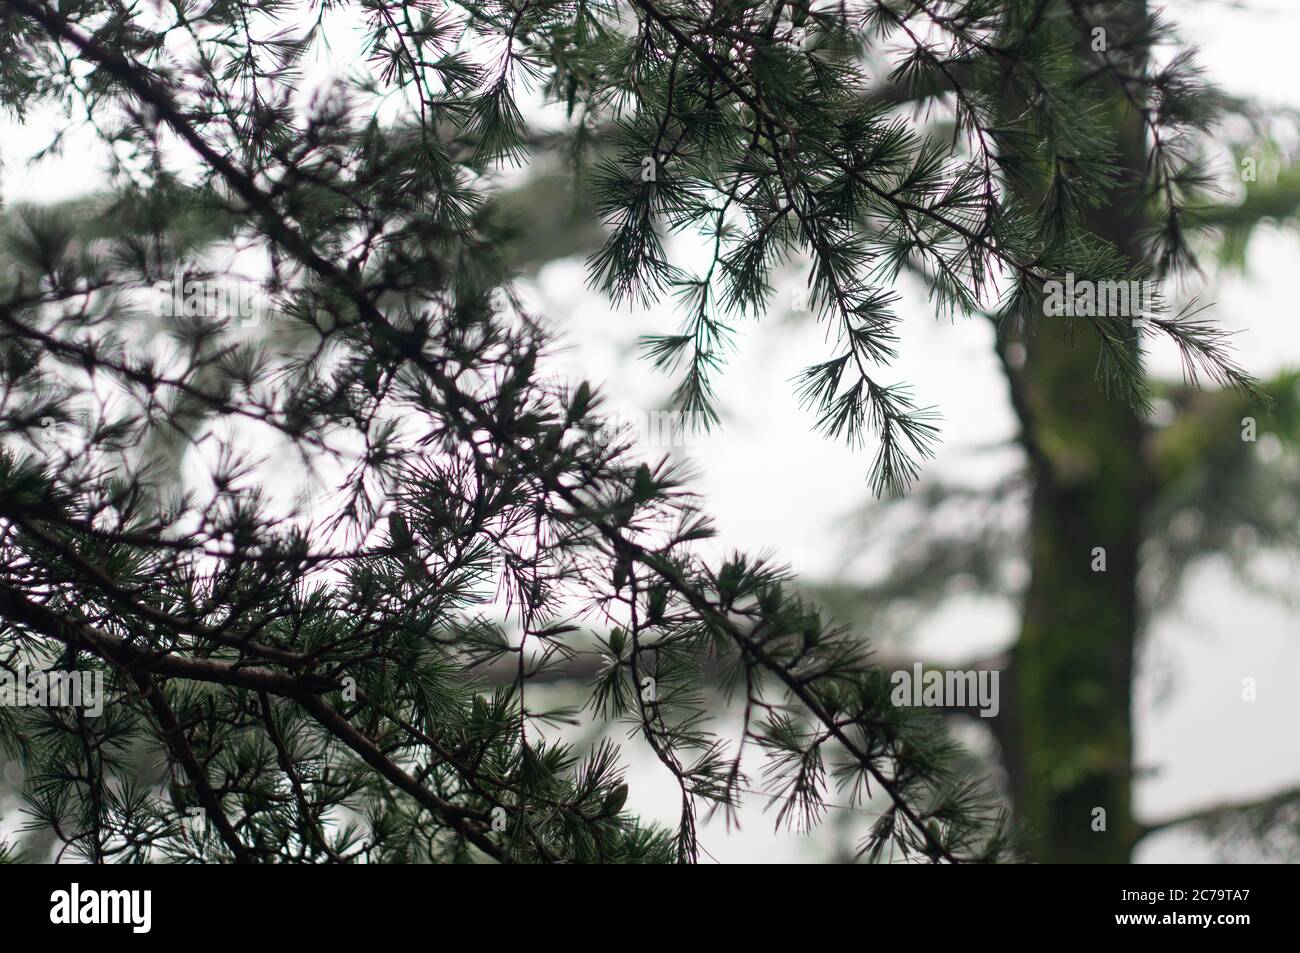 Nebliger Wintershoot zeigt sommergrüne tannenbäume mit spitzen Blättern, die im Nebel langsam in die Ferne verblassen Stockfoto